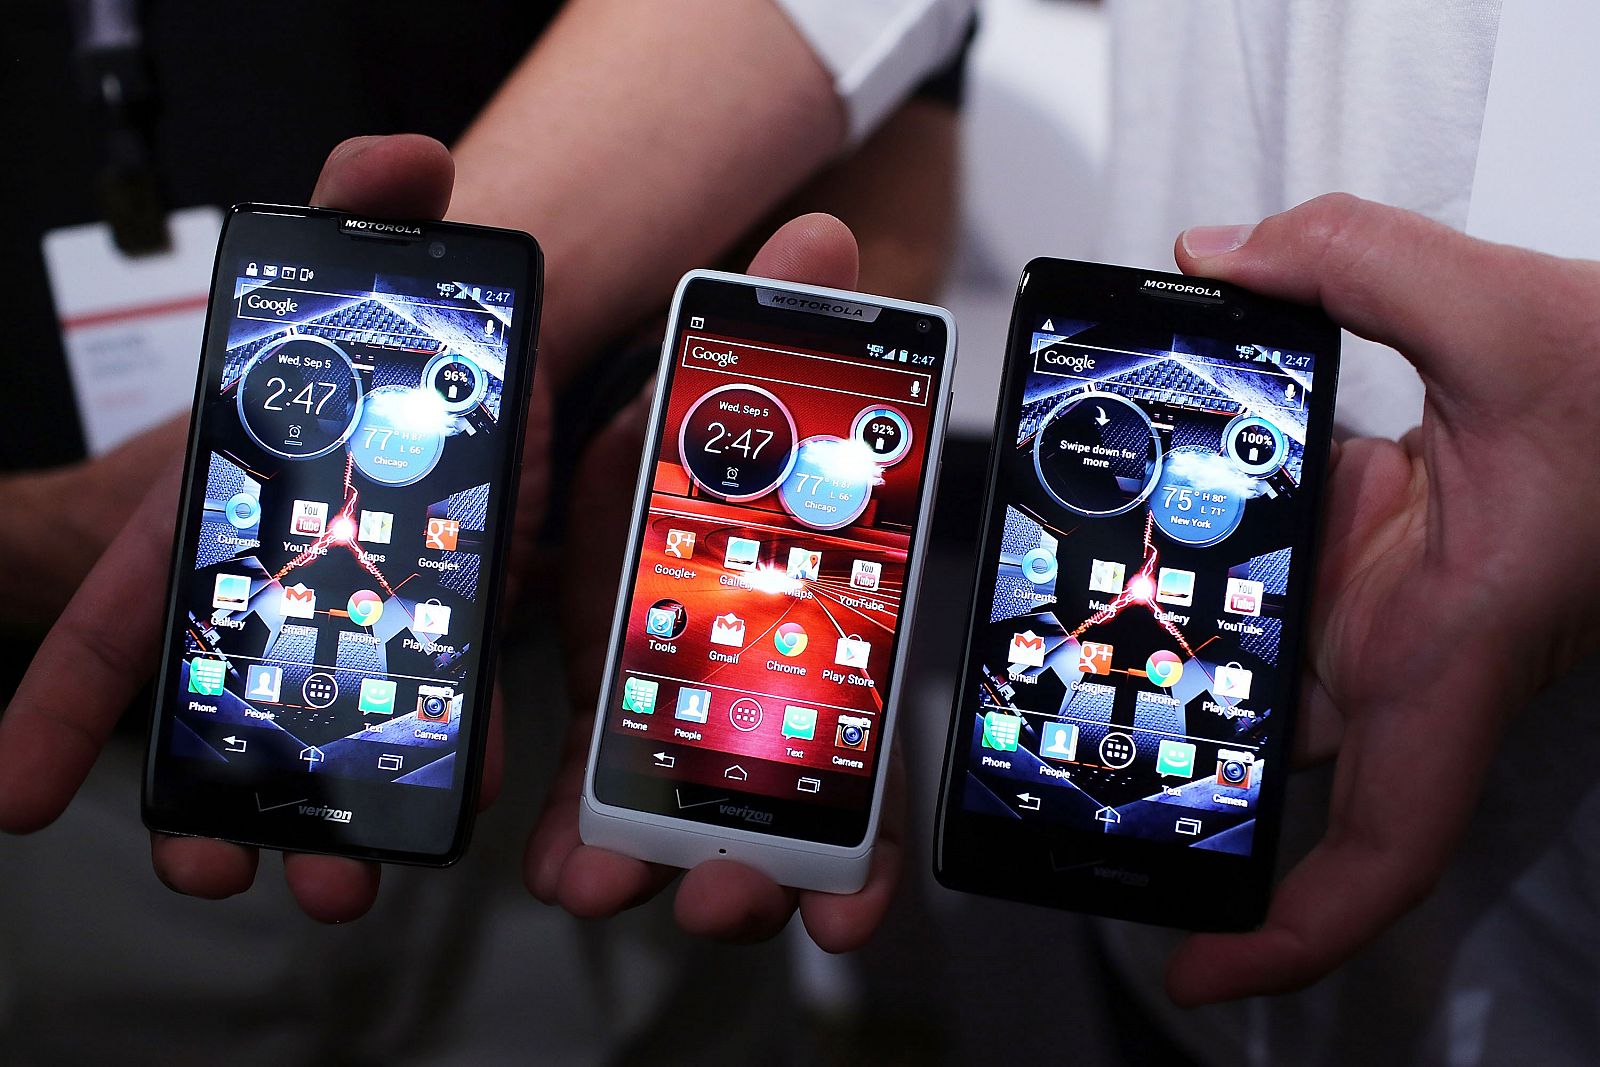 Los móviles de Motorola dejarán de estar disponibles en las tiendas españolas a partir del 31 de diciembre